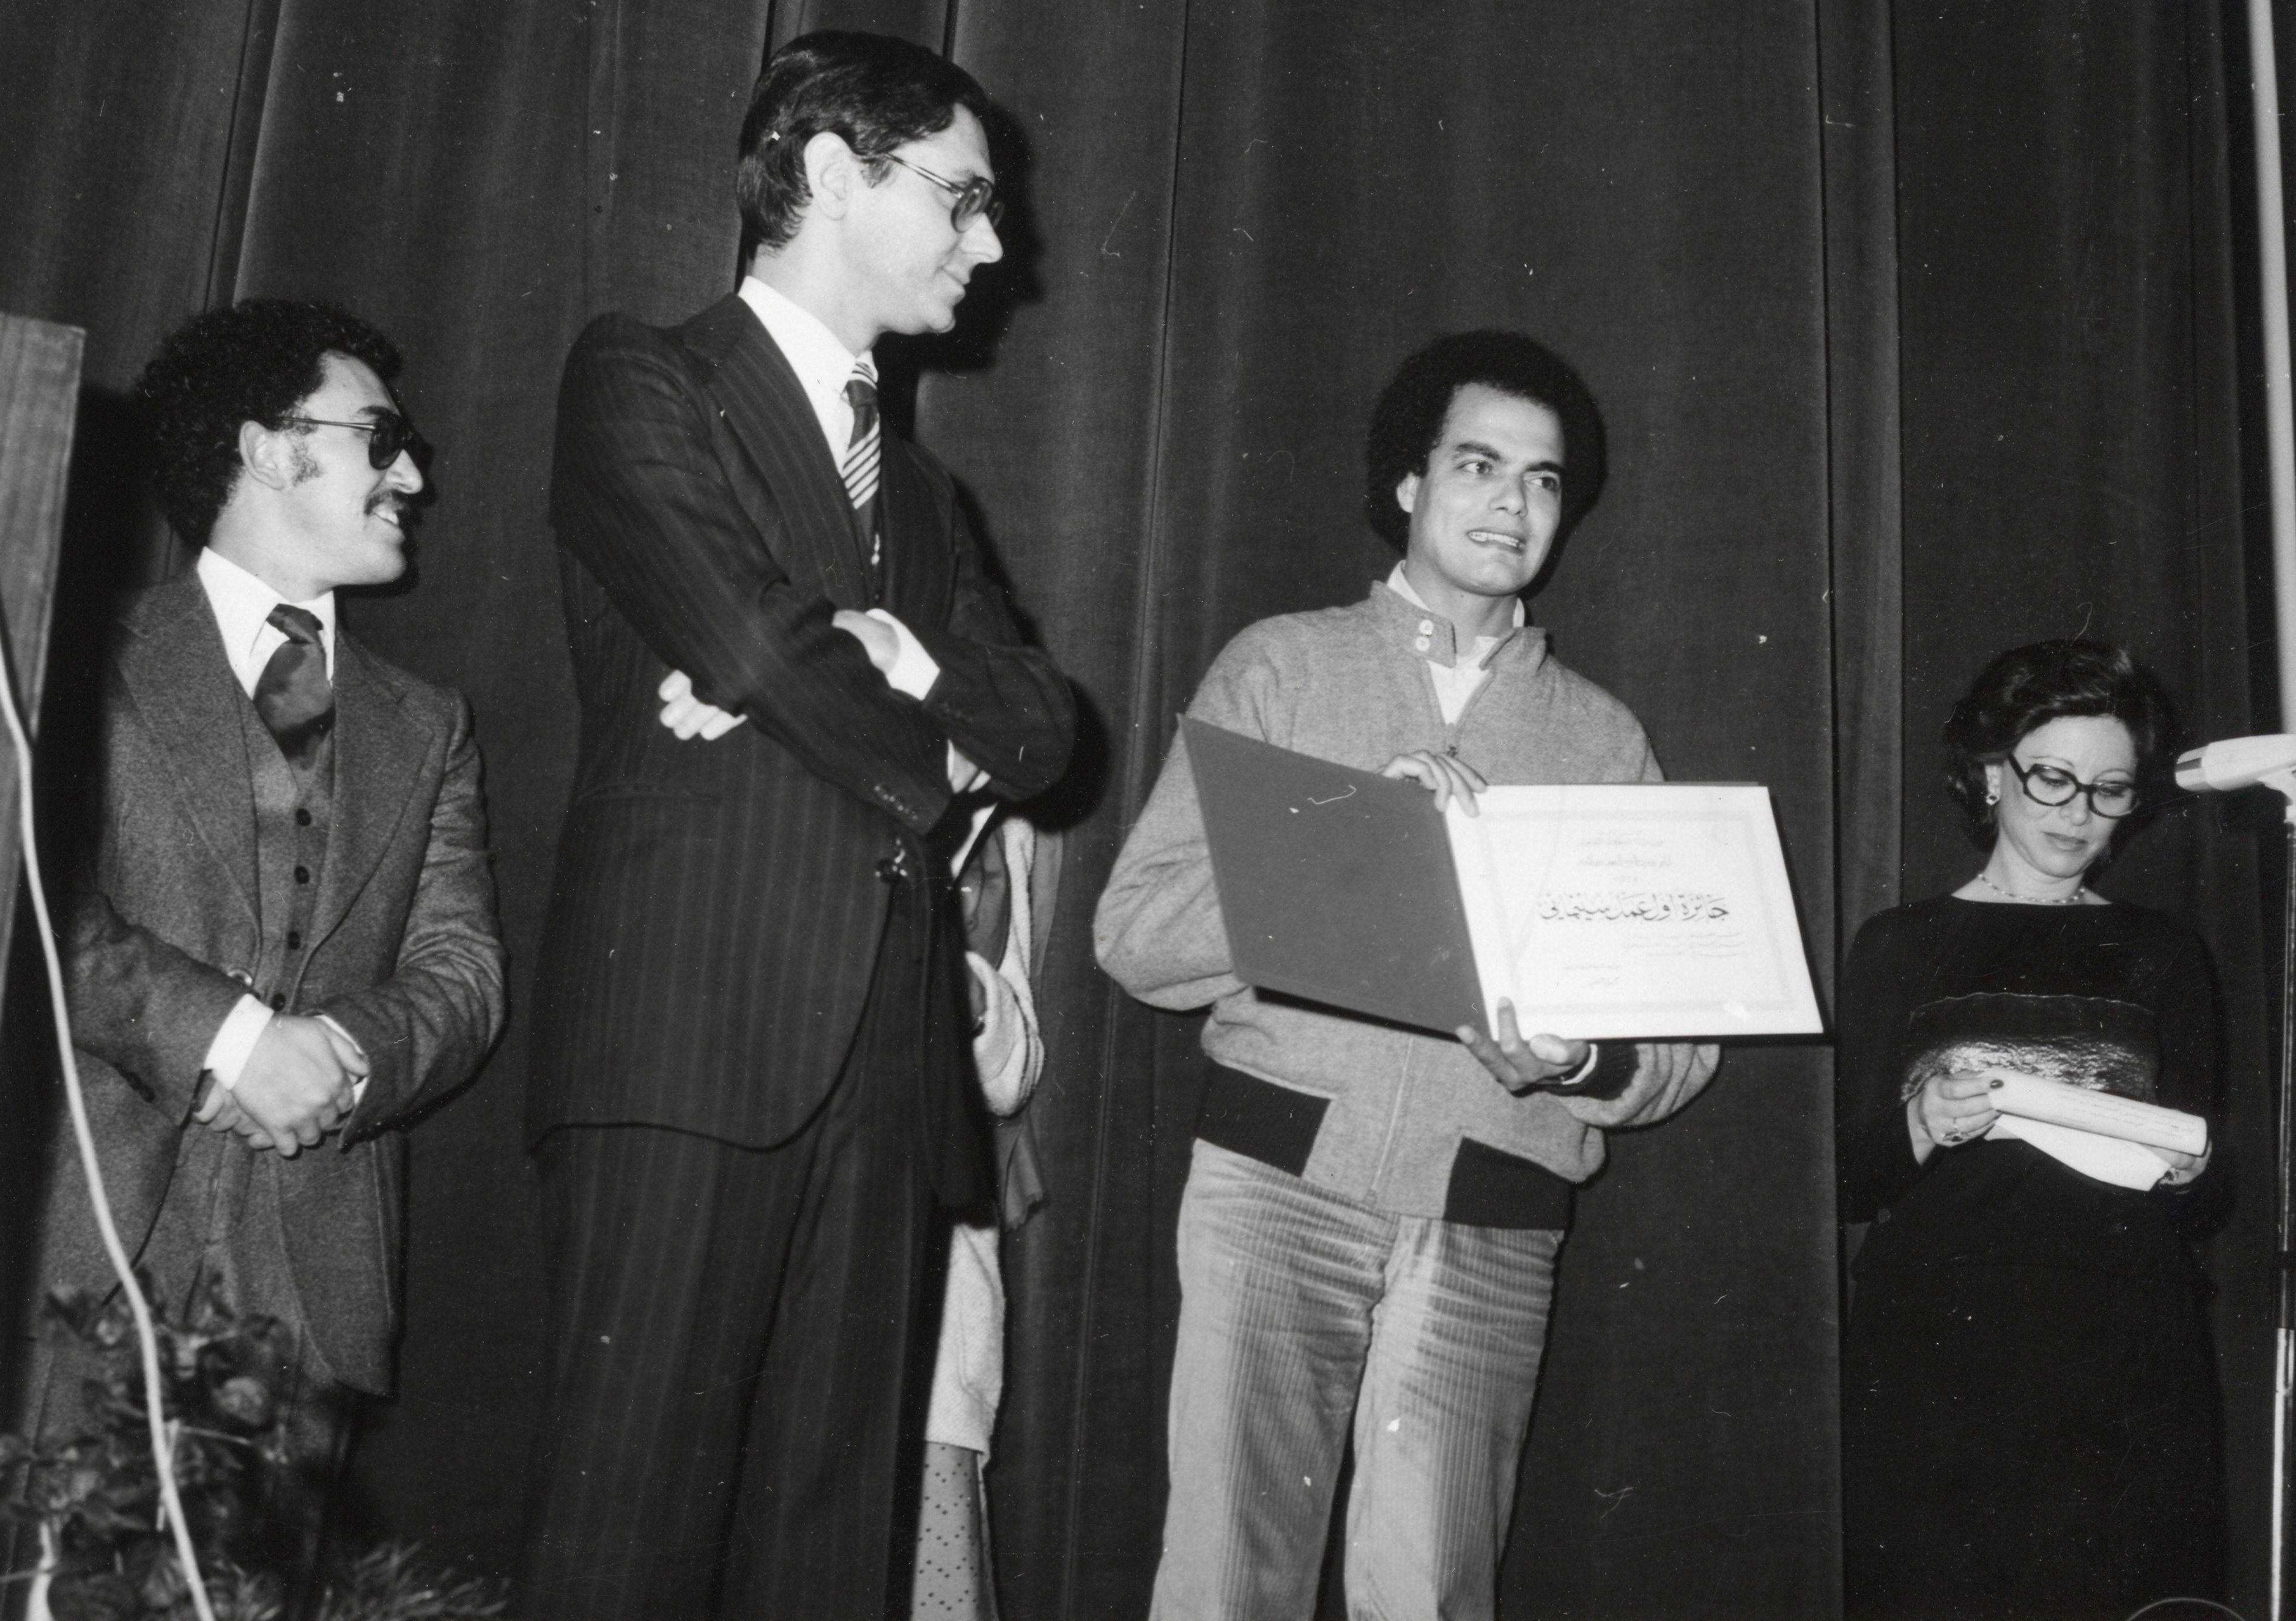 Hammadi Essid Directeur des JCC 1987, remettant unn prix au cinéaste marocain Ahmed El Maanouni en présence de la présidente du jury choisie par lui, la Star égyptienne Faten Hamama.